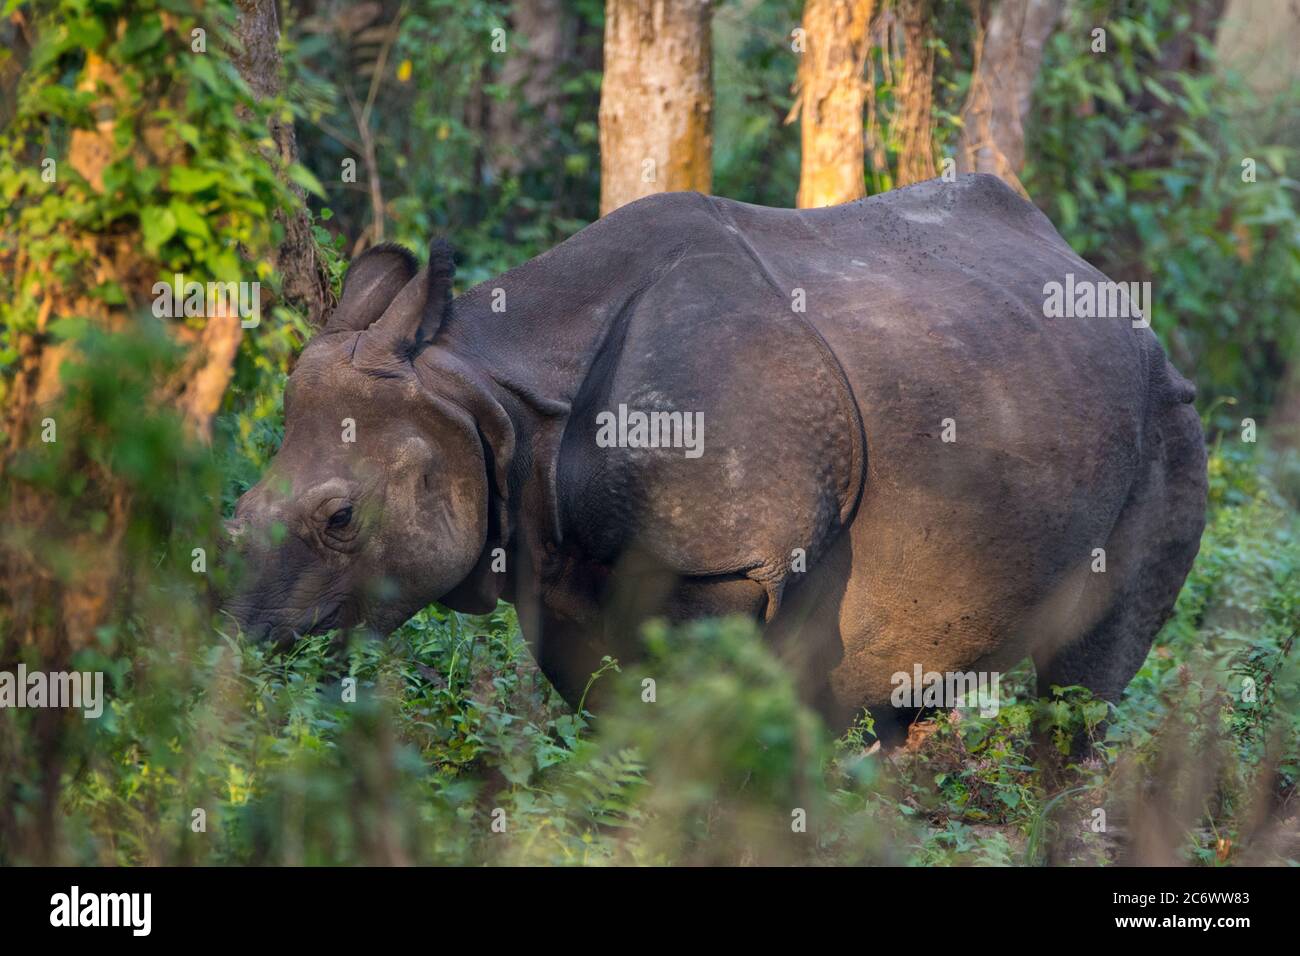 Rhino asiatique (Rhinoceros unicornis) ou Rhino indien, un rhinocéros indien en voie de disparition originaire de l'Inde, et le Népal qui broutage dans un champ. Banque D'Images